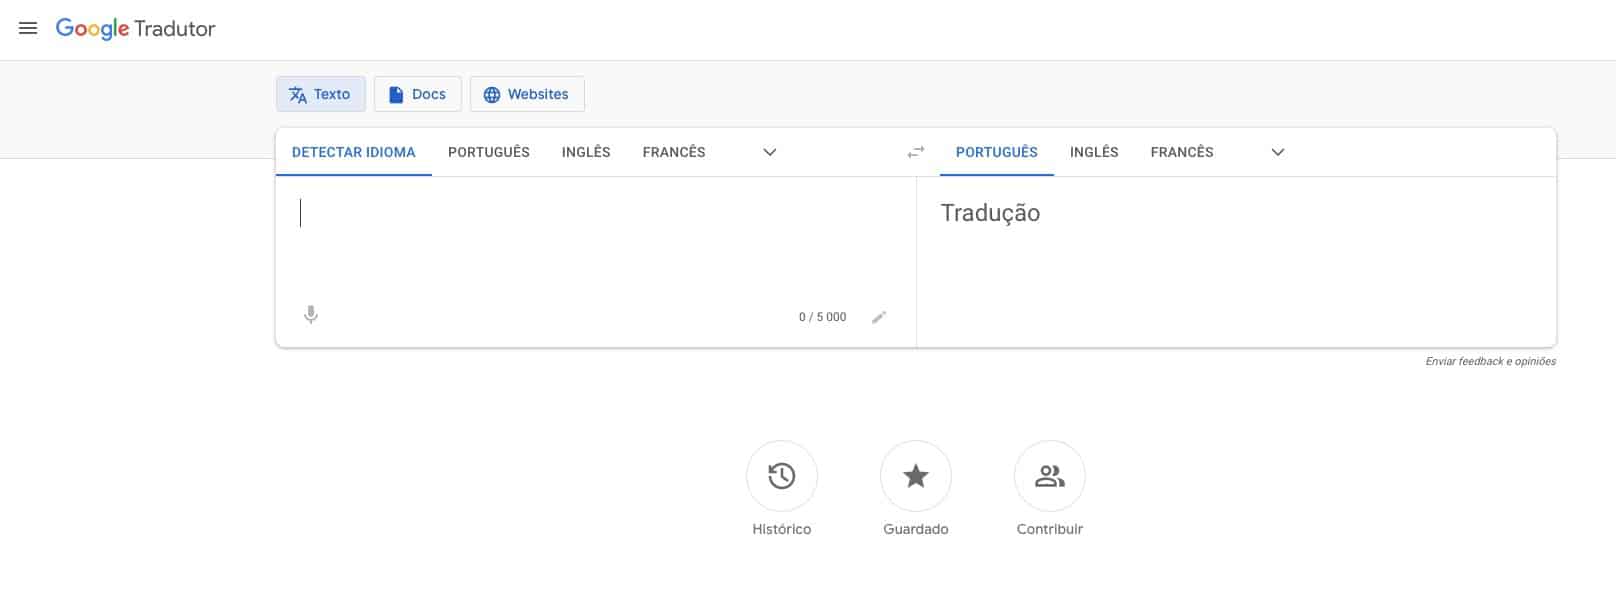 Como usar o Google Tradutor de português para inglês britânico